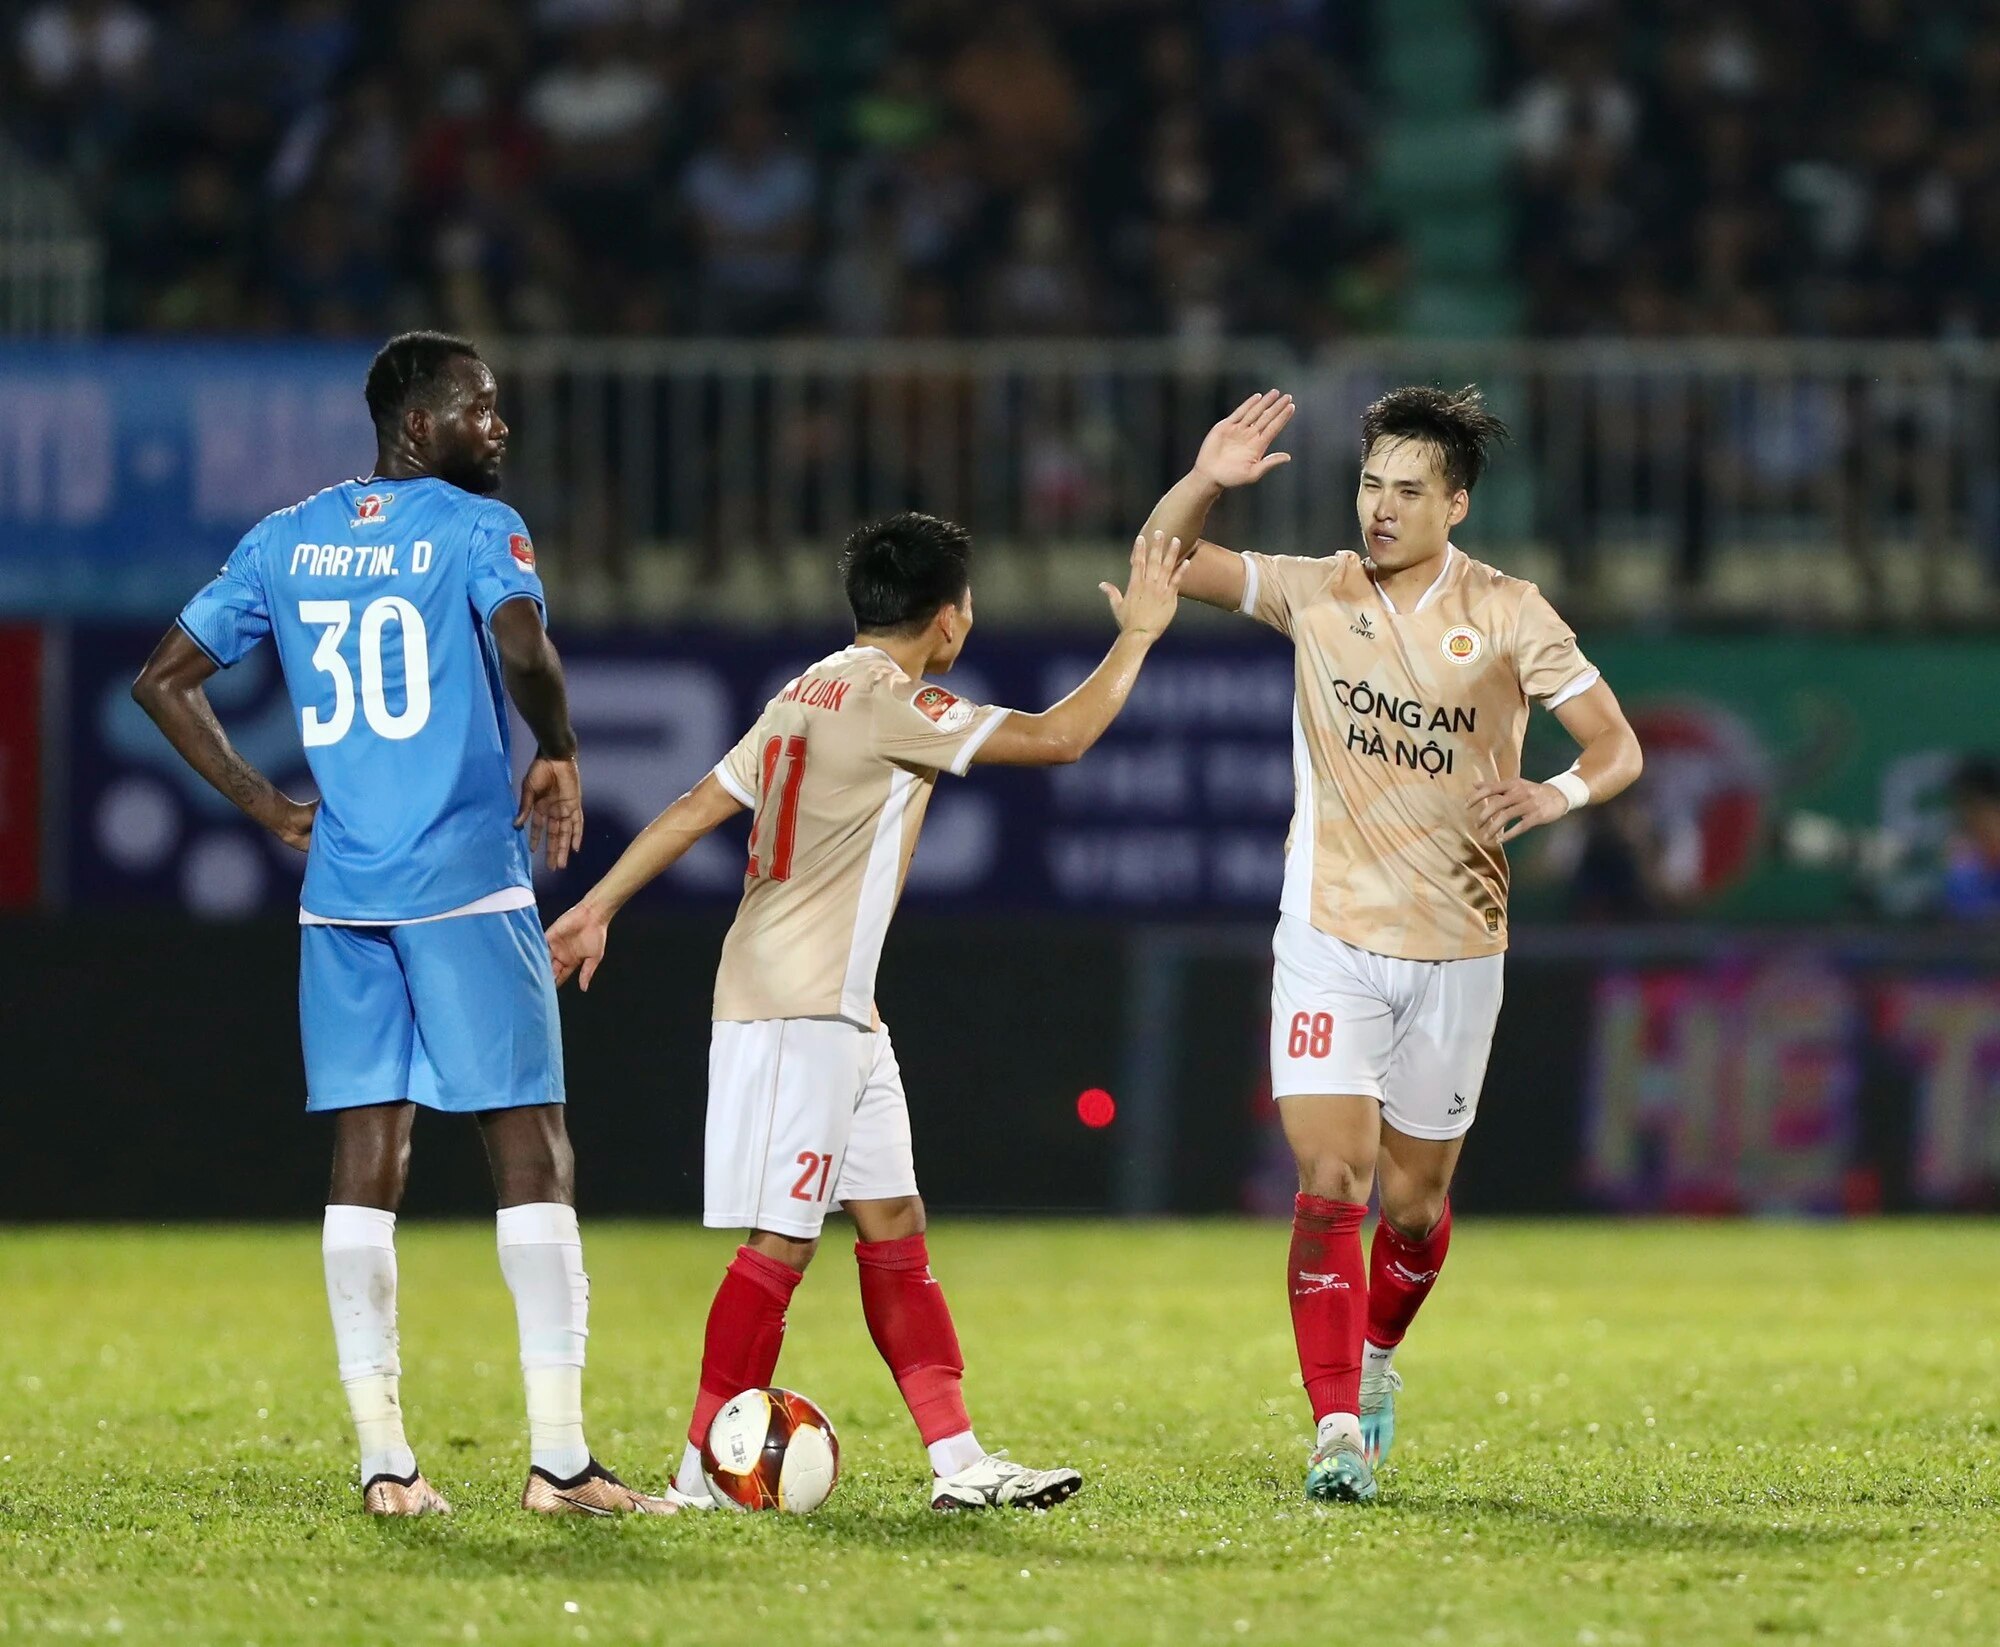 Bùi Hoàng Việt Anh 'cất' trái tim ngày trở lại đối đầu đội bóng cũ - Ảnh 2.